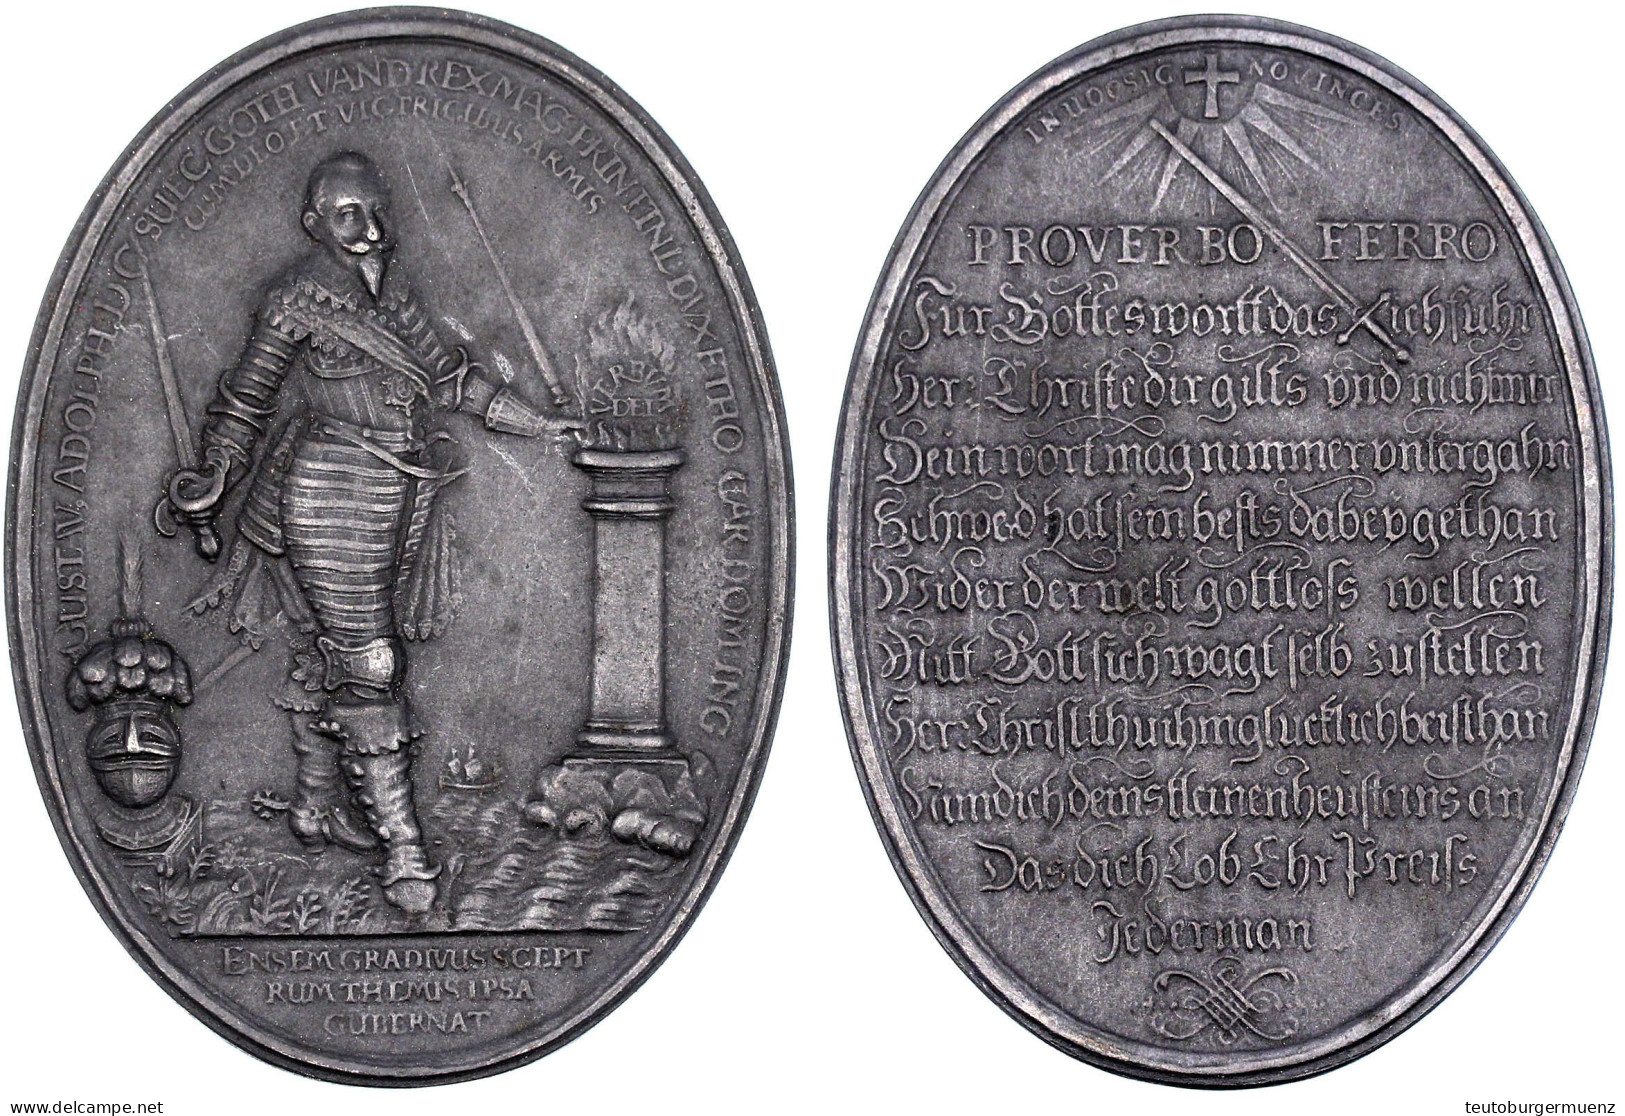 Ovale Eisenguss-Medaille O.J. (1932), Unsign. Nach Einer Medaille Von Paul Walther, Im Auftrag Der Stadt Fürth Zur Erinn - Gold Coins